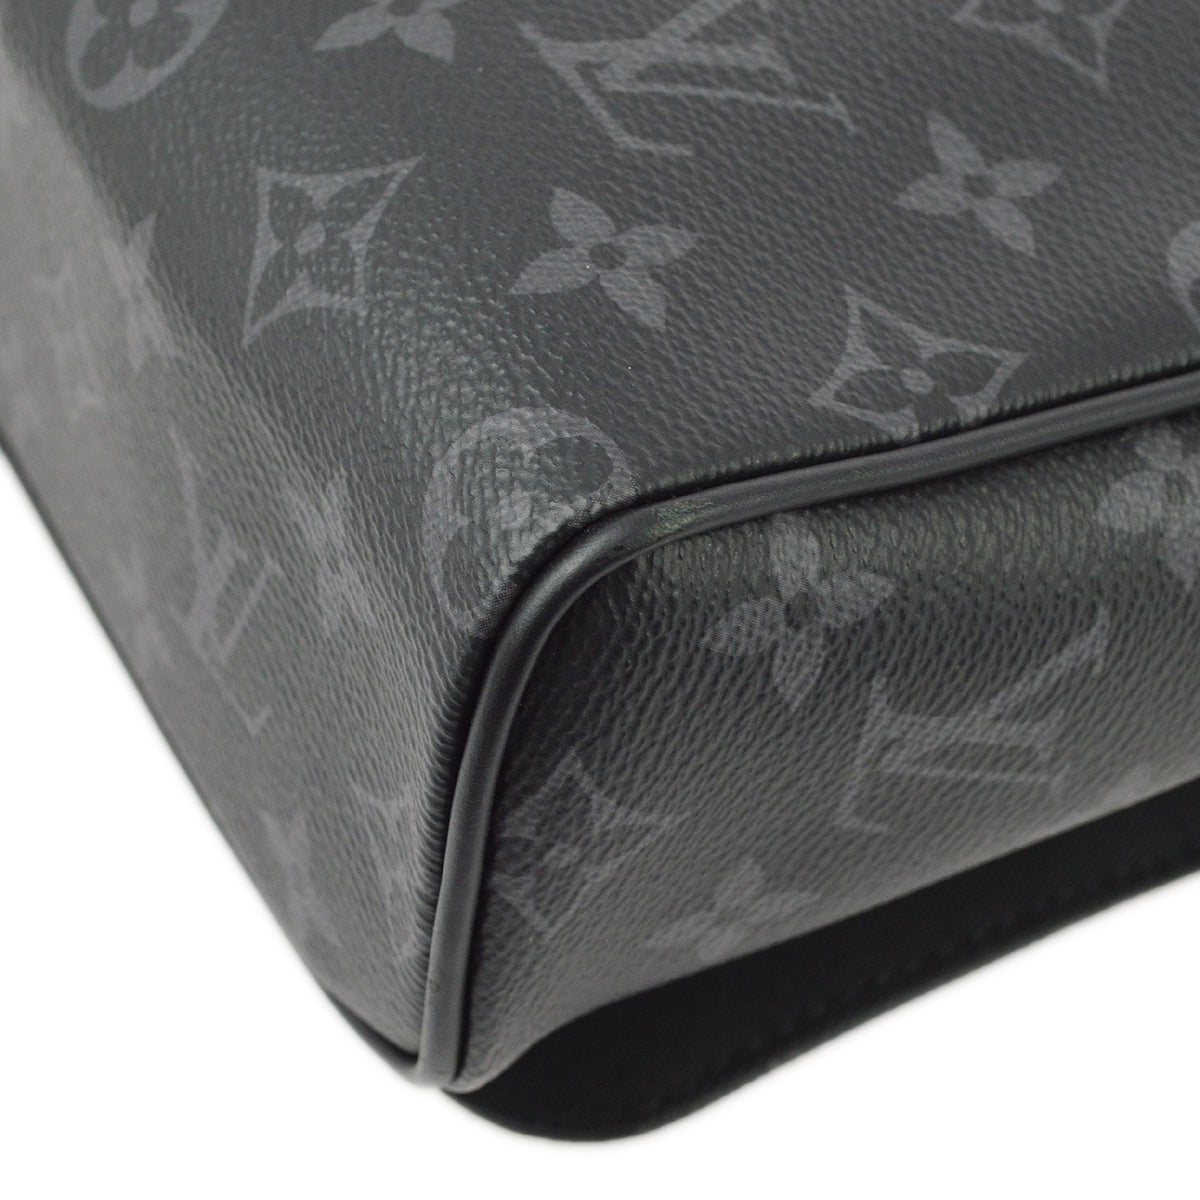 Louis Vuitton Monogram Eclipse District PM Shoulder Bag M44000